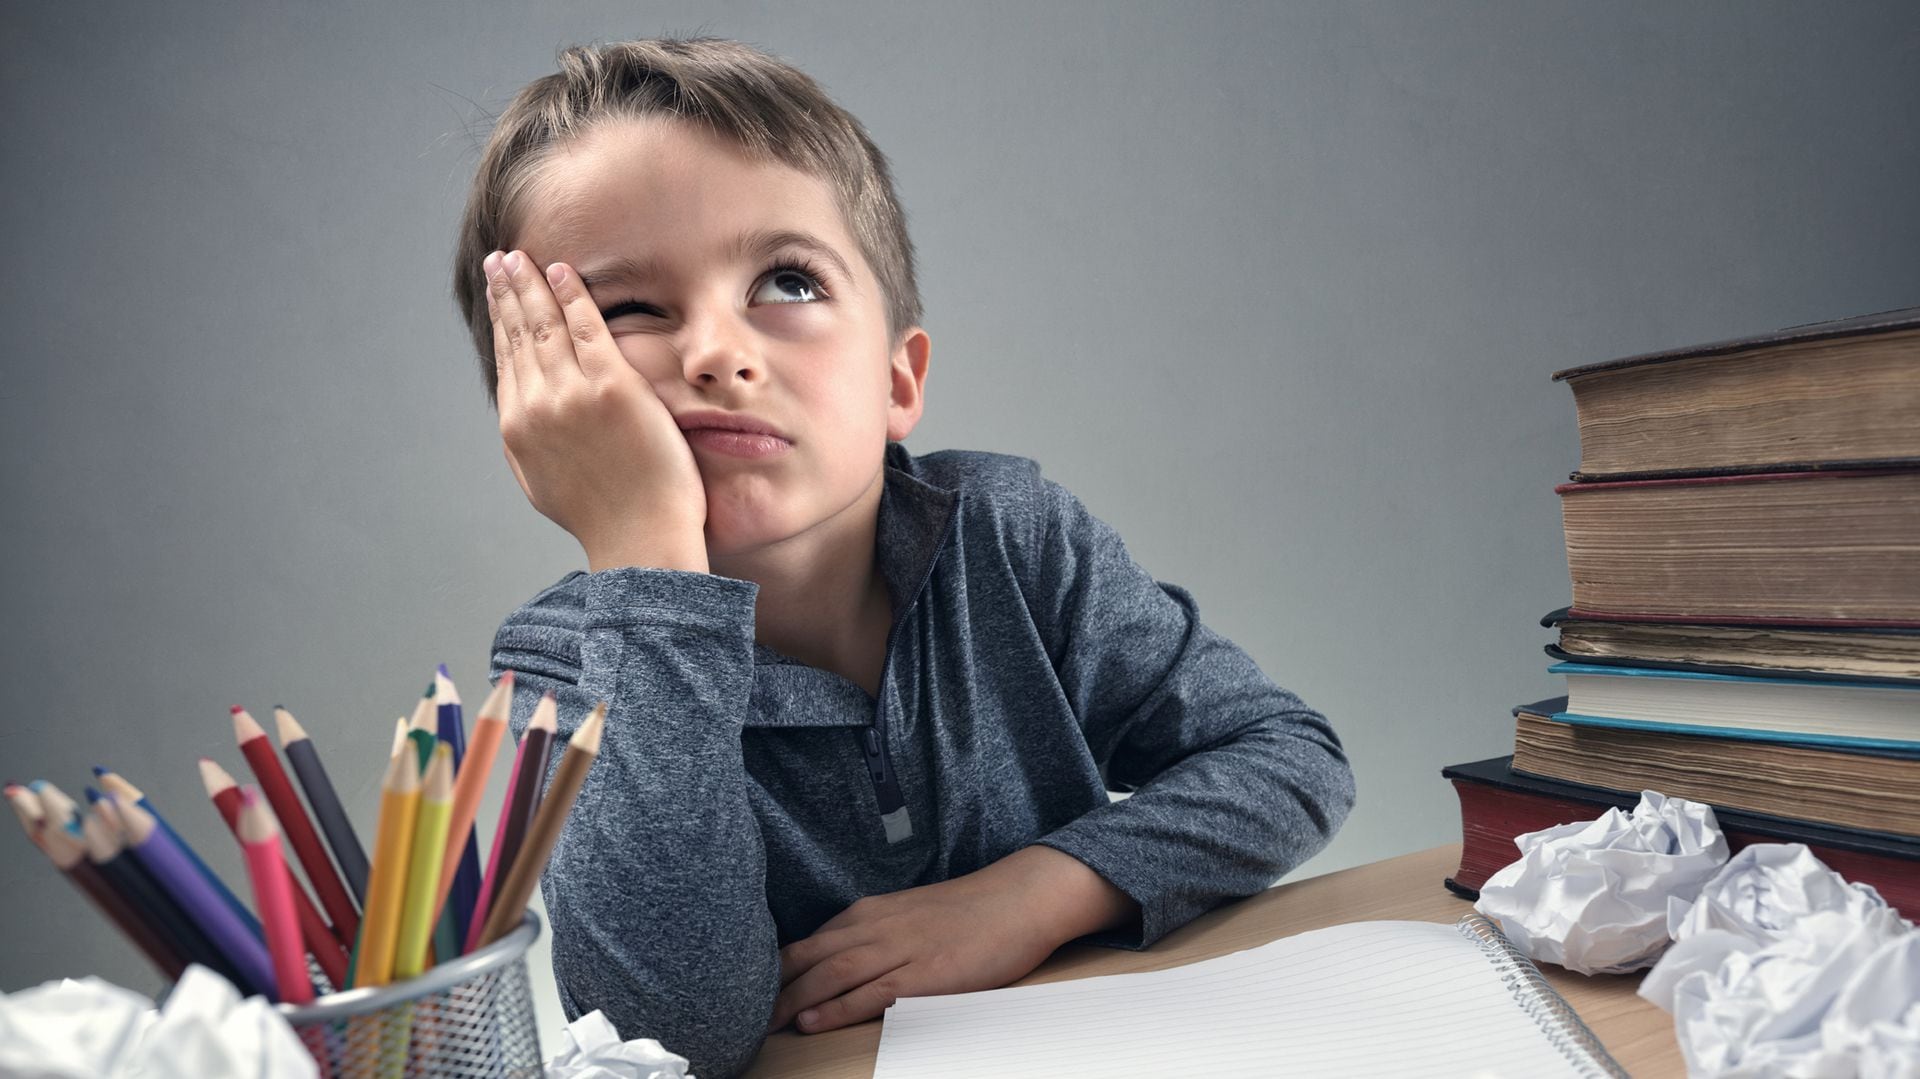 Si a un niño se le dificulta hacer las tareas del colegio, los padres tienen que animarlo y repetirle que tiene la inteligencia suficiente para cumplir con sus deberes escolares (Getty Images)
